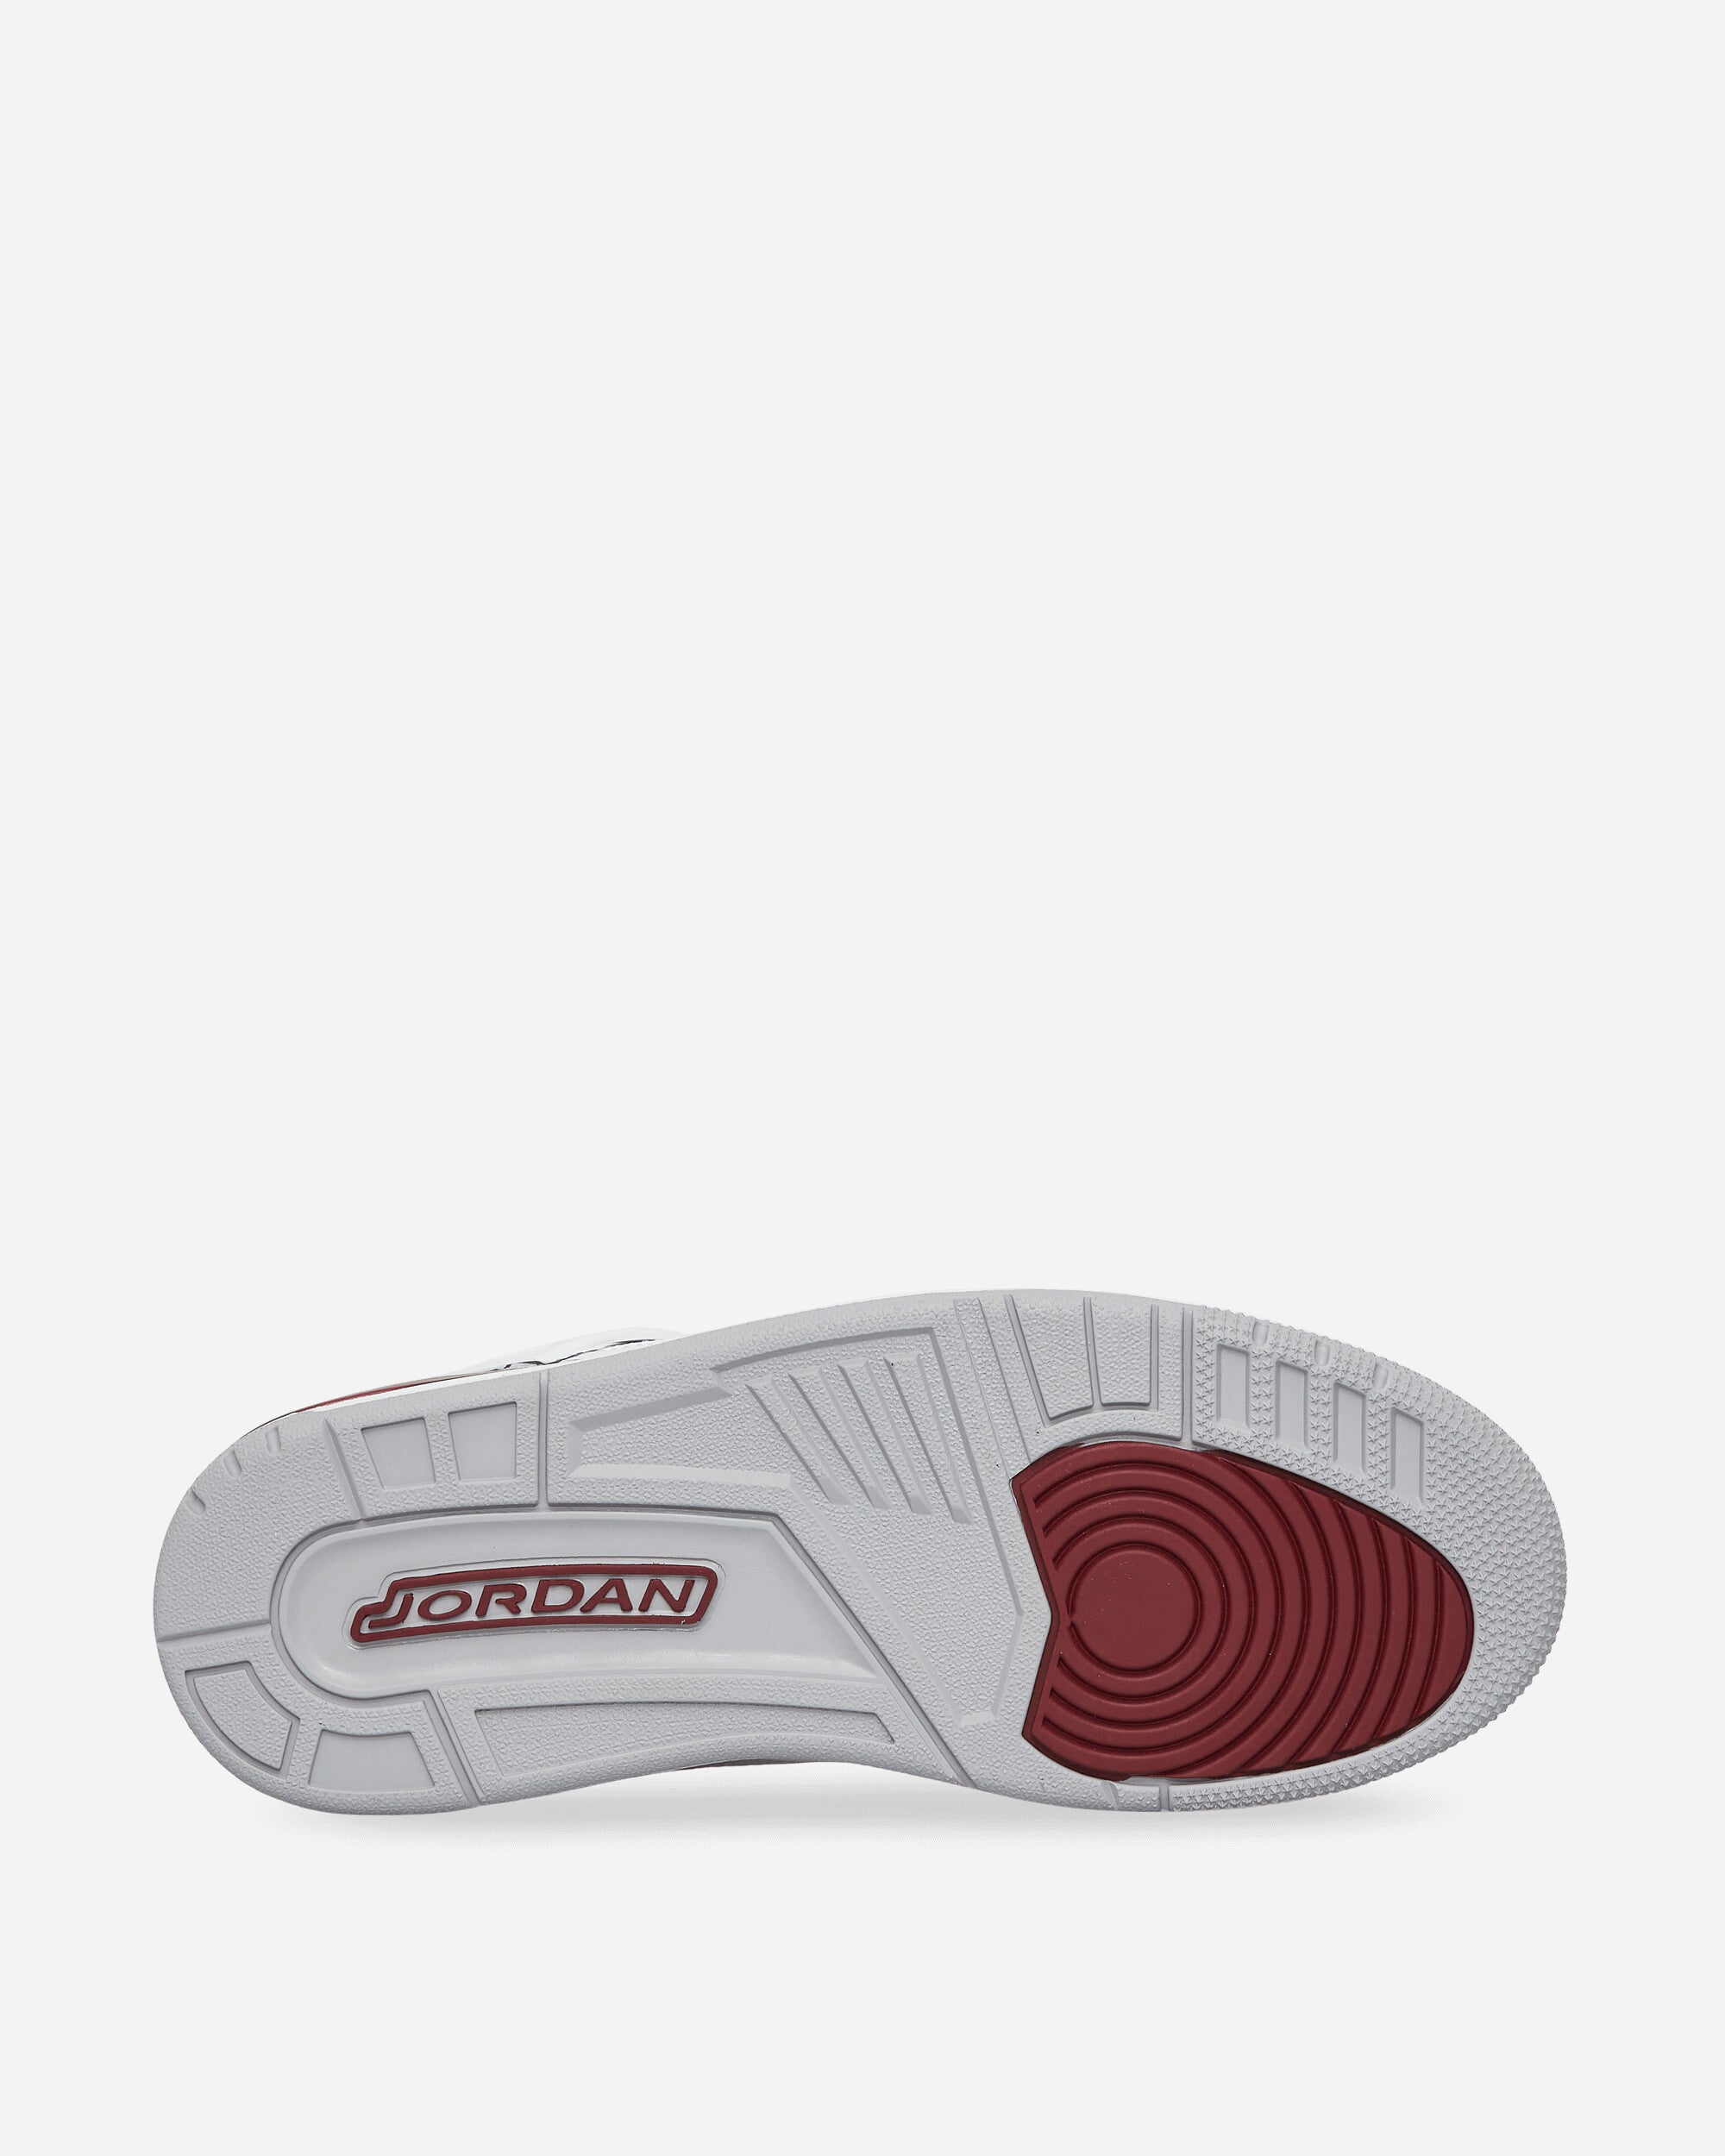 Nike Jordan Jordan Spizike Low White/Team Red Sneakers Low FQ1759-106